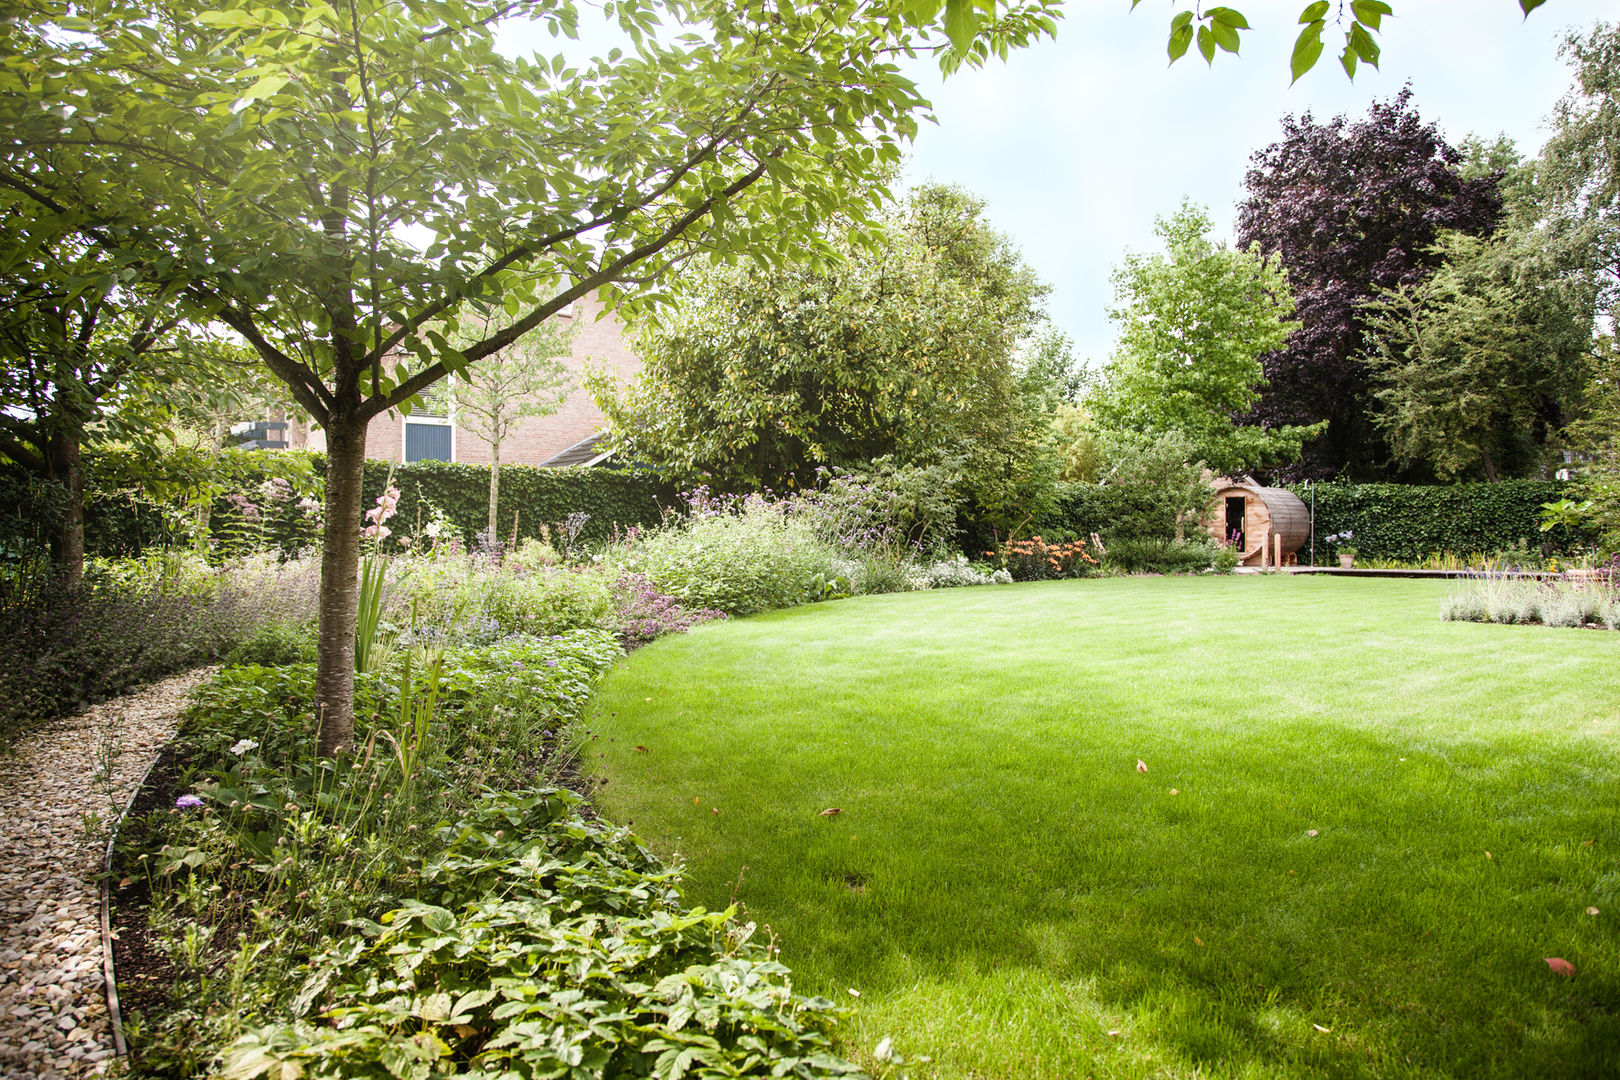 Wellness tuin verbonden met het landschap, Studio REDD exclusieve tuinen Studio REDD exclusieve tuinen 컨트리스타일 정원